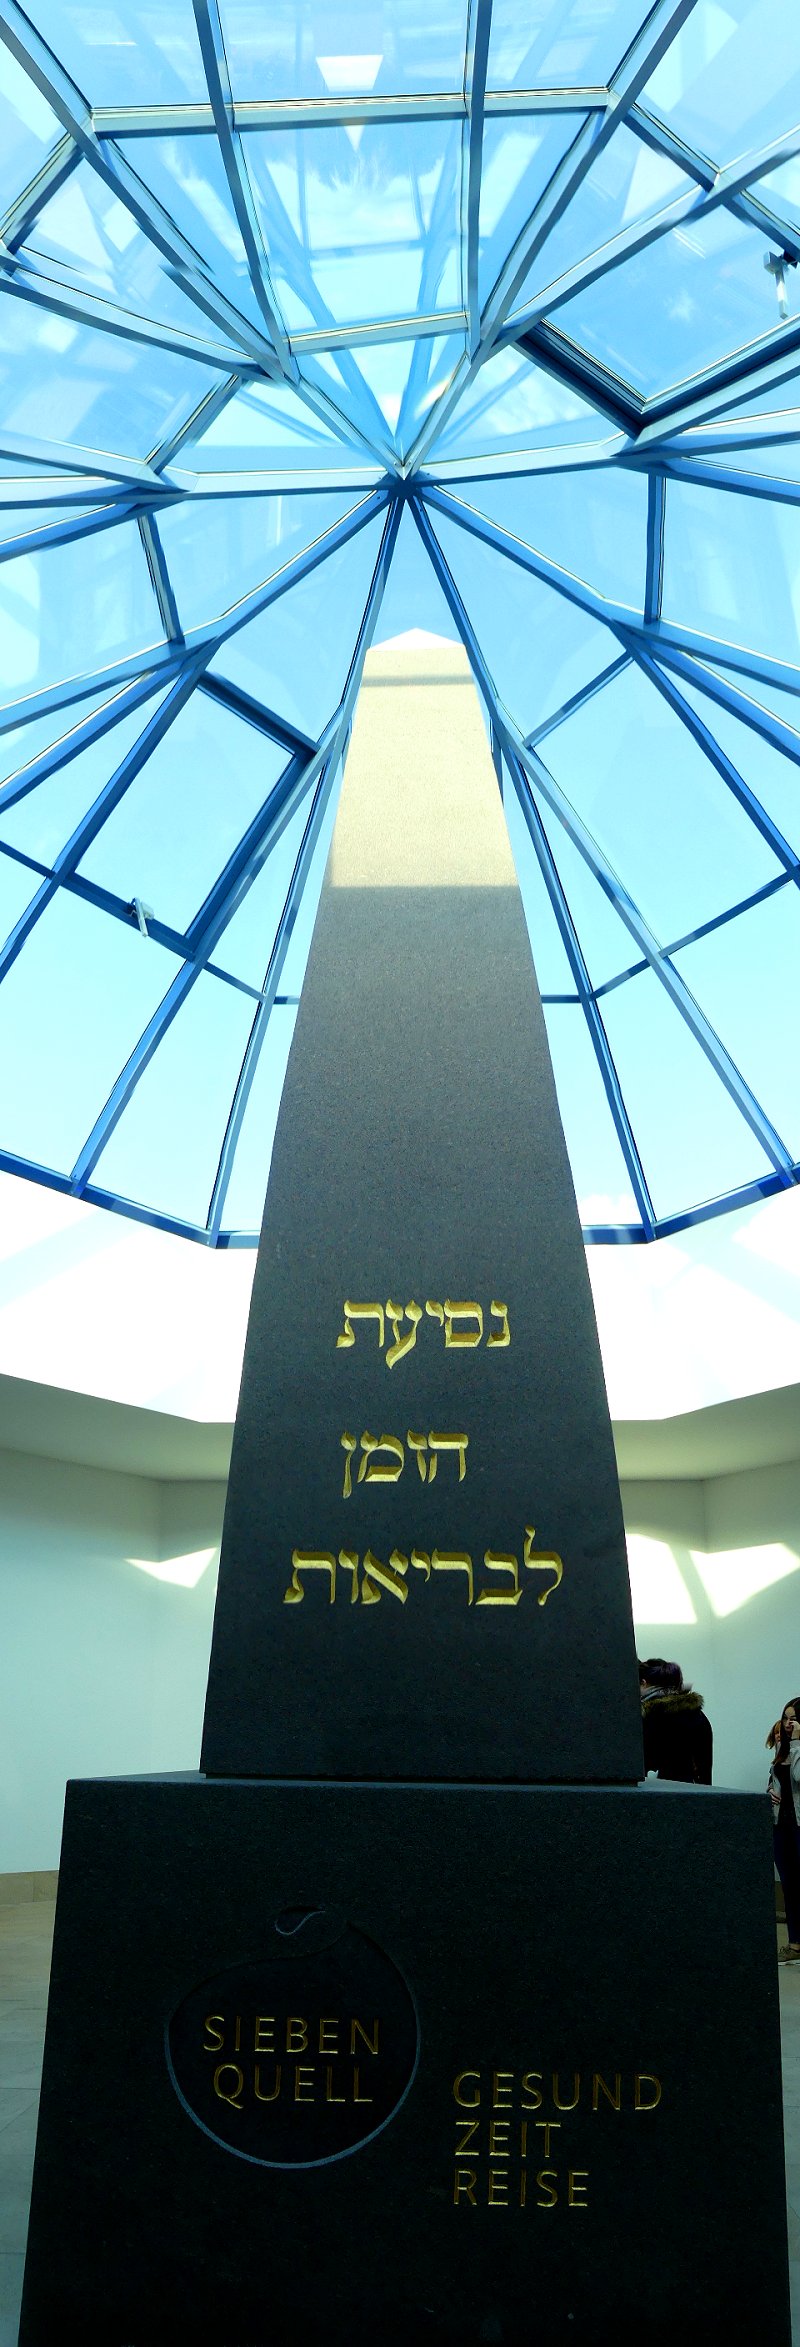 Die israelische Seite des Obelisken im Siebenquell Gesundzeitresort Weißenstadt